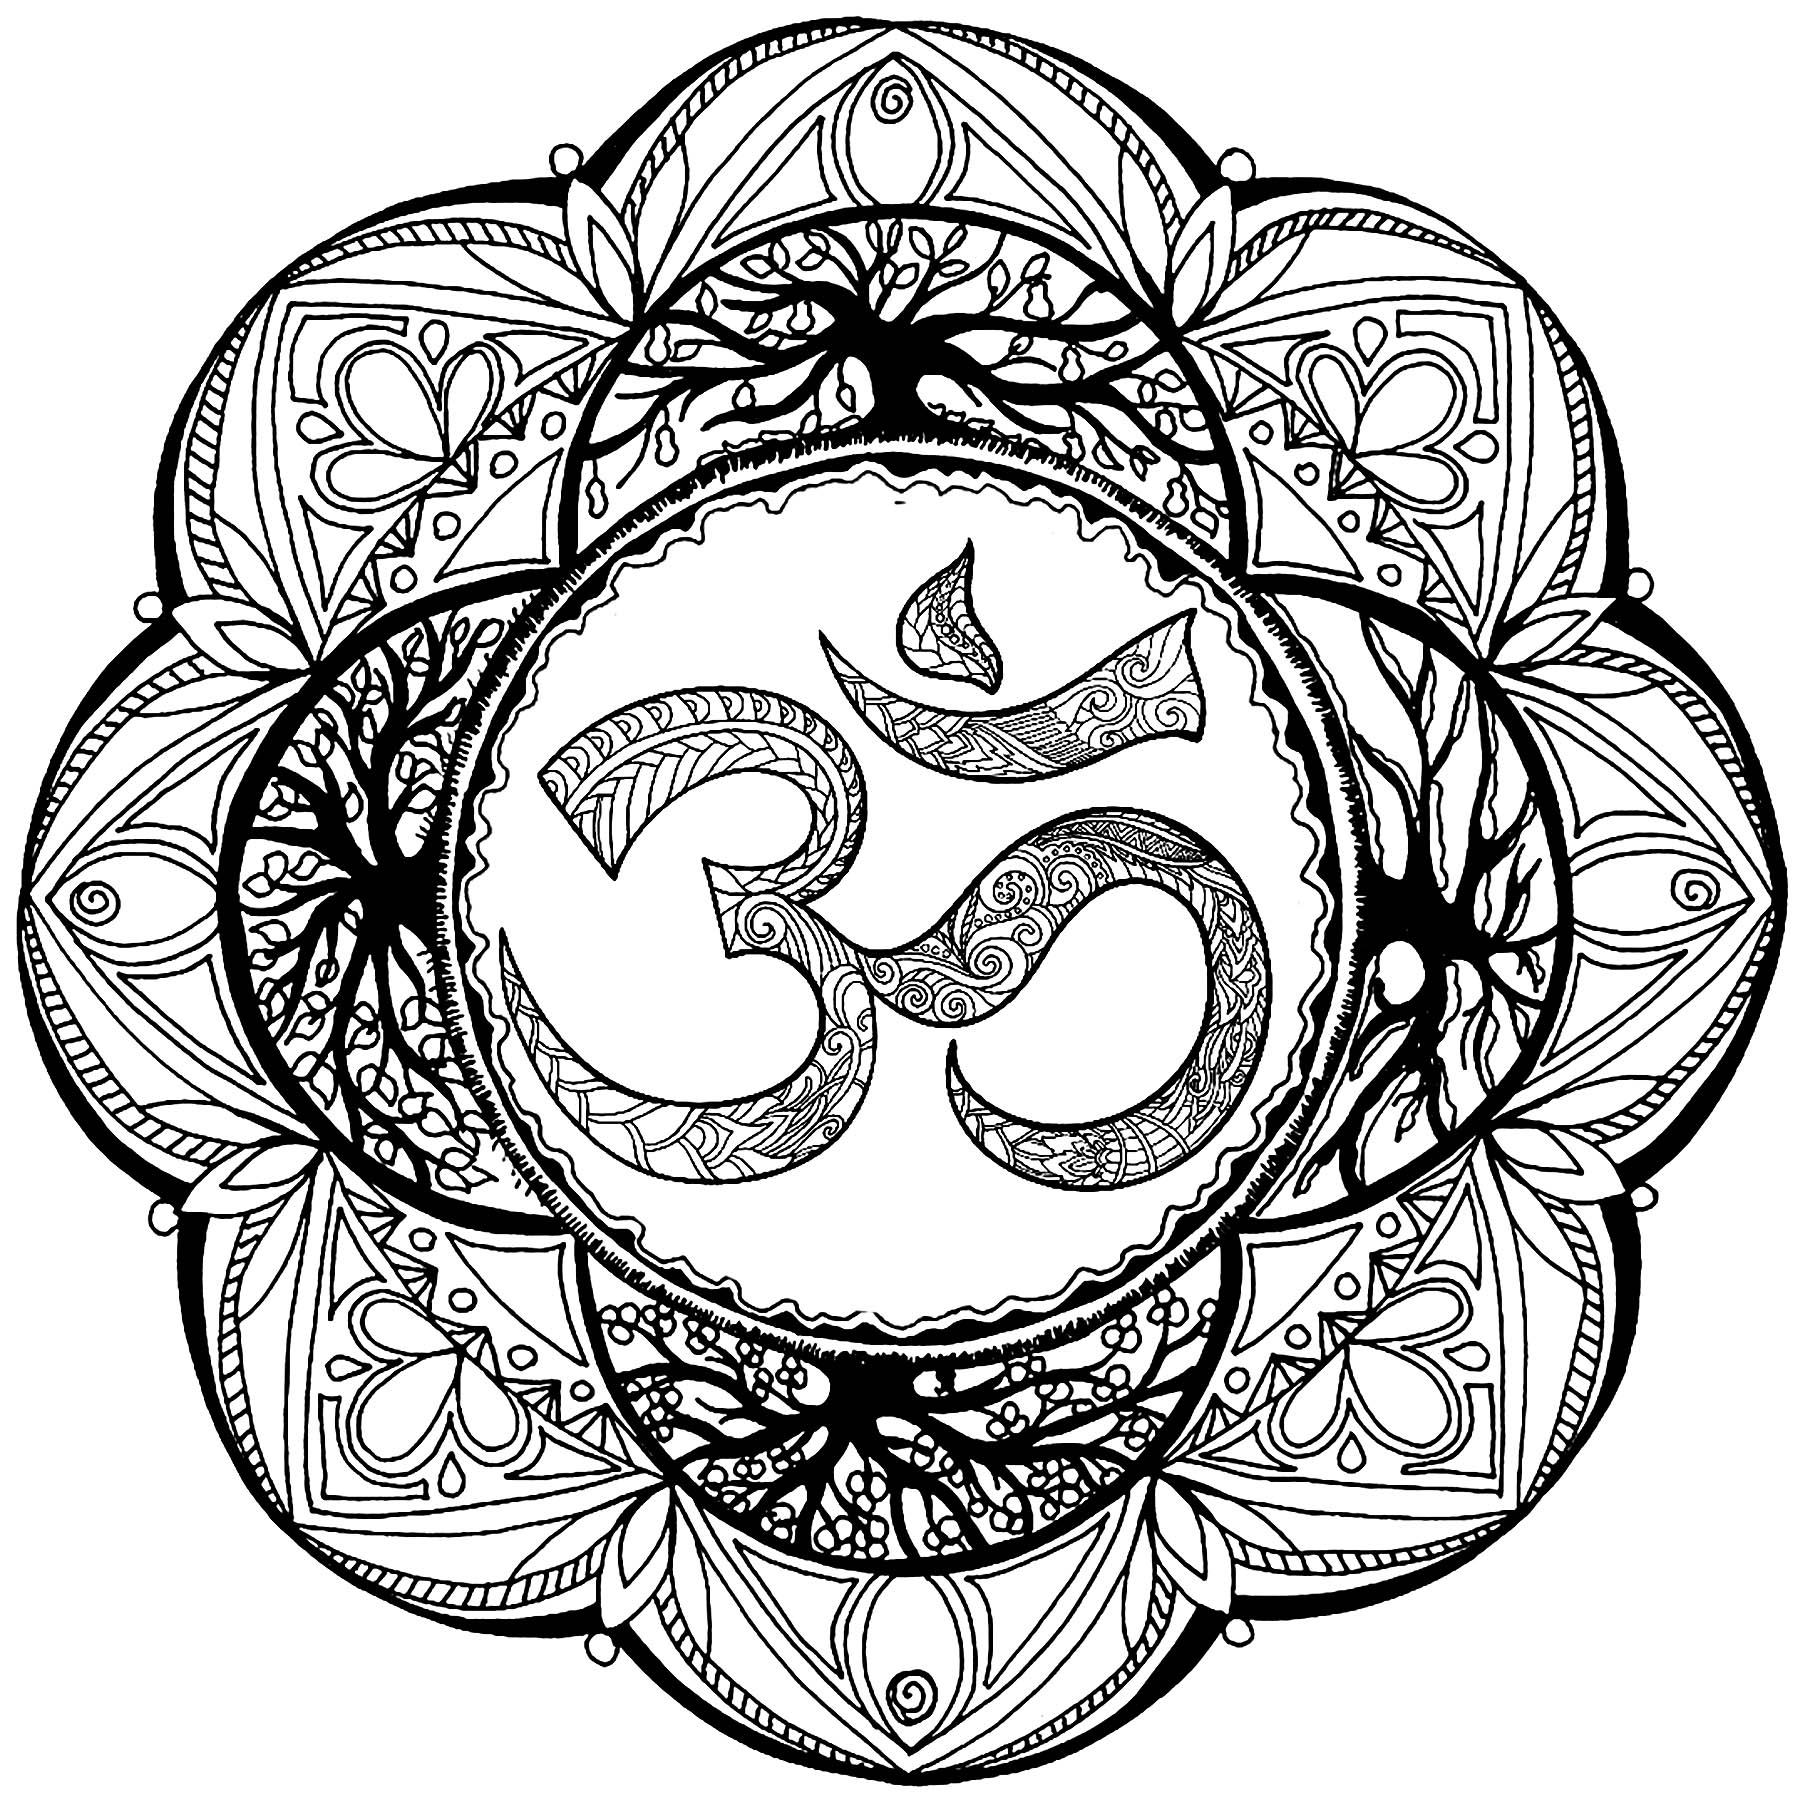 Om, auch als Aum' geschrieben, ist die heiligste Silbe, das Symbol oder Mantra im Hinduismus.  Dieses Symbol steht für die Essenz der ultimativen Realität, das Bewusstsein oder den Atman.